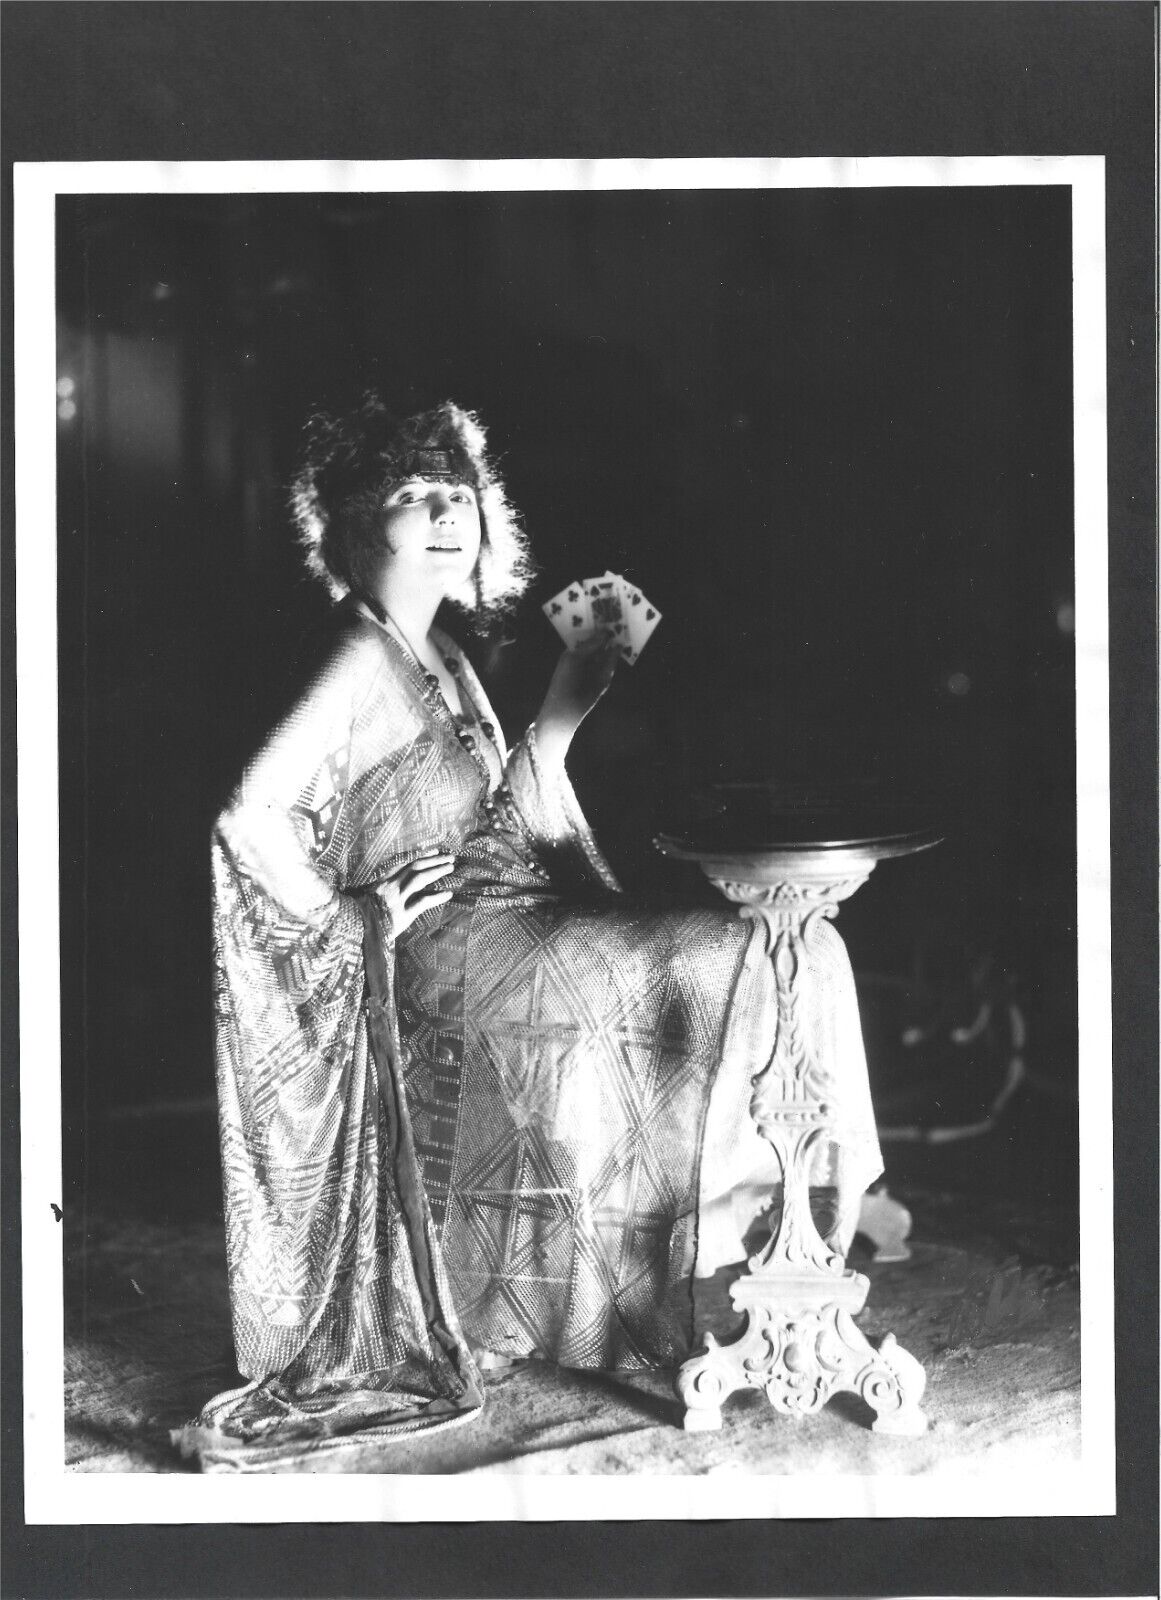 1920 The Leopard Woman VINTAGE KODAK PHOTO Louise Glaum Publicity Shot